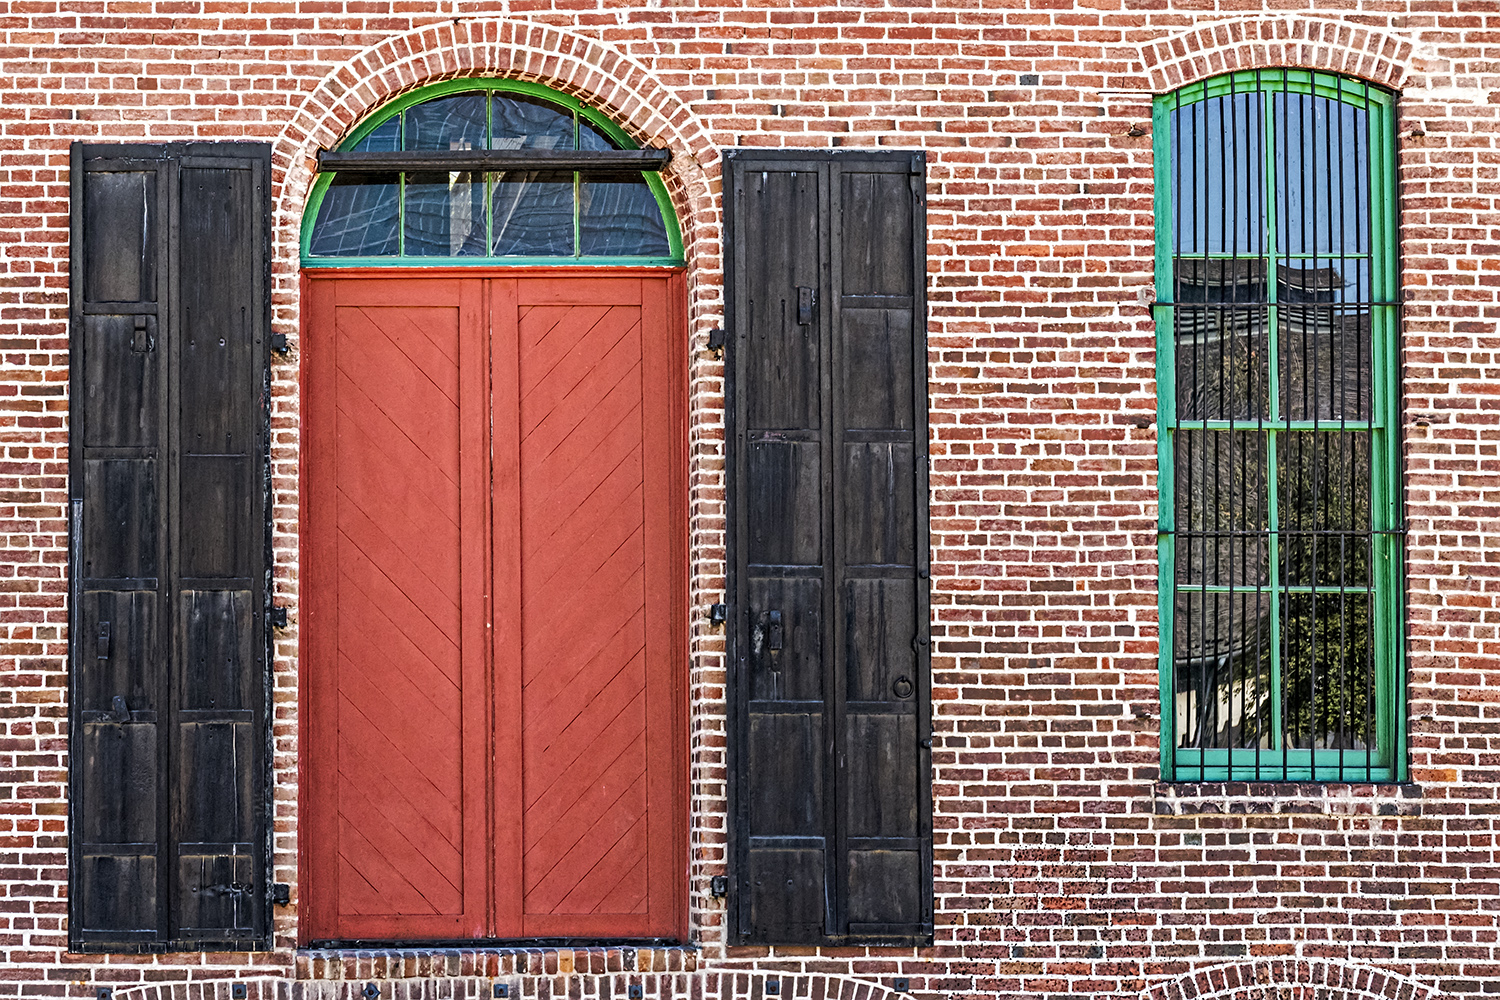 Old Town: The Red Door